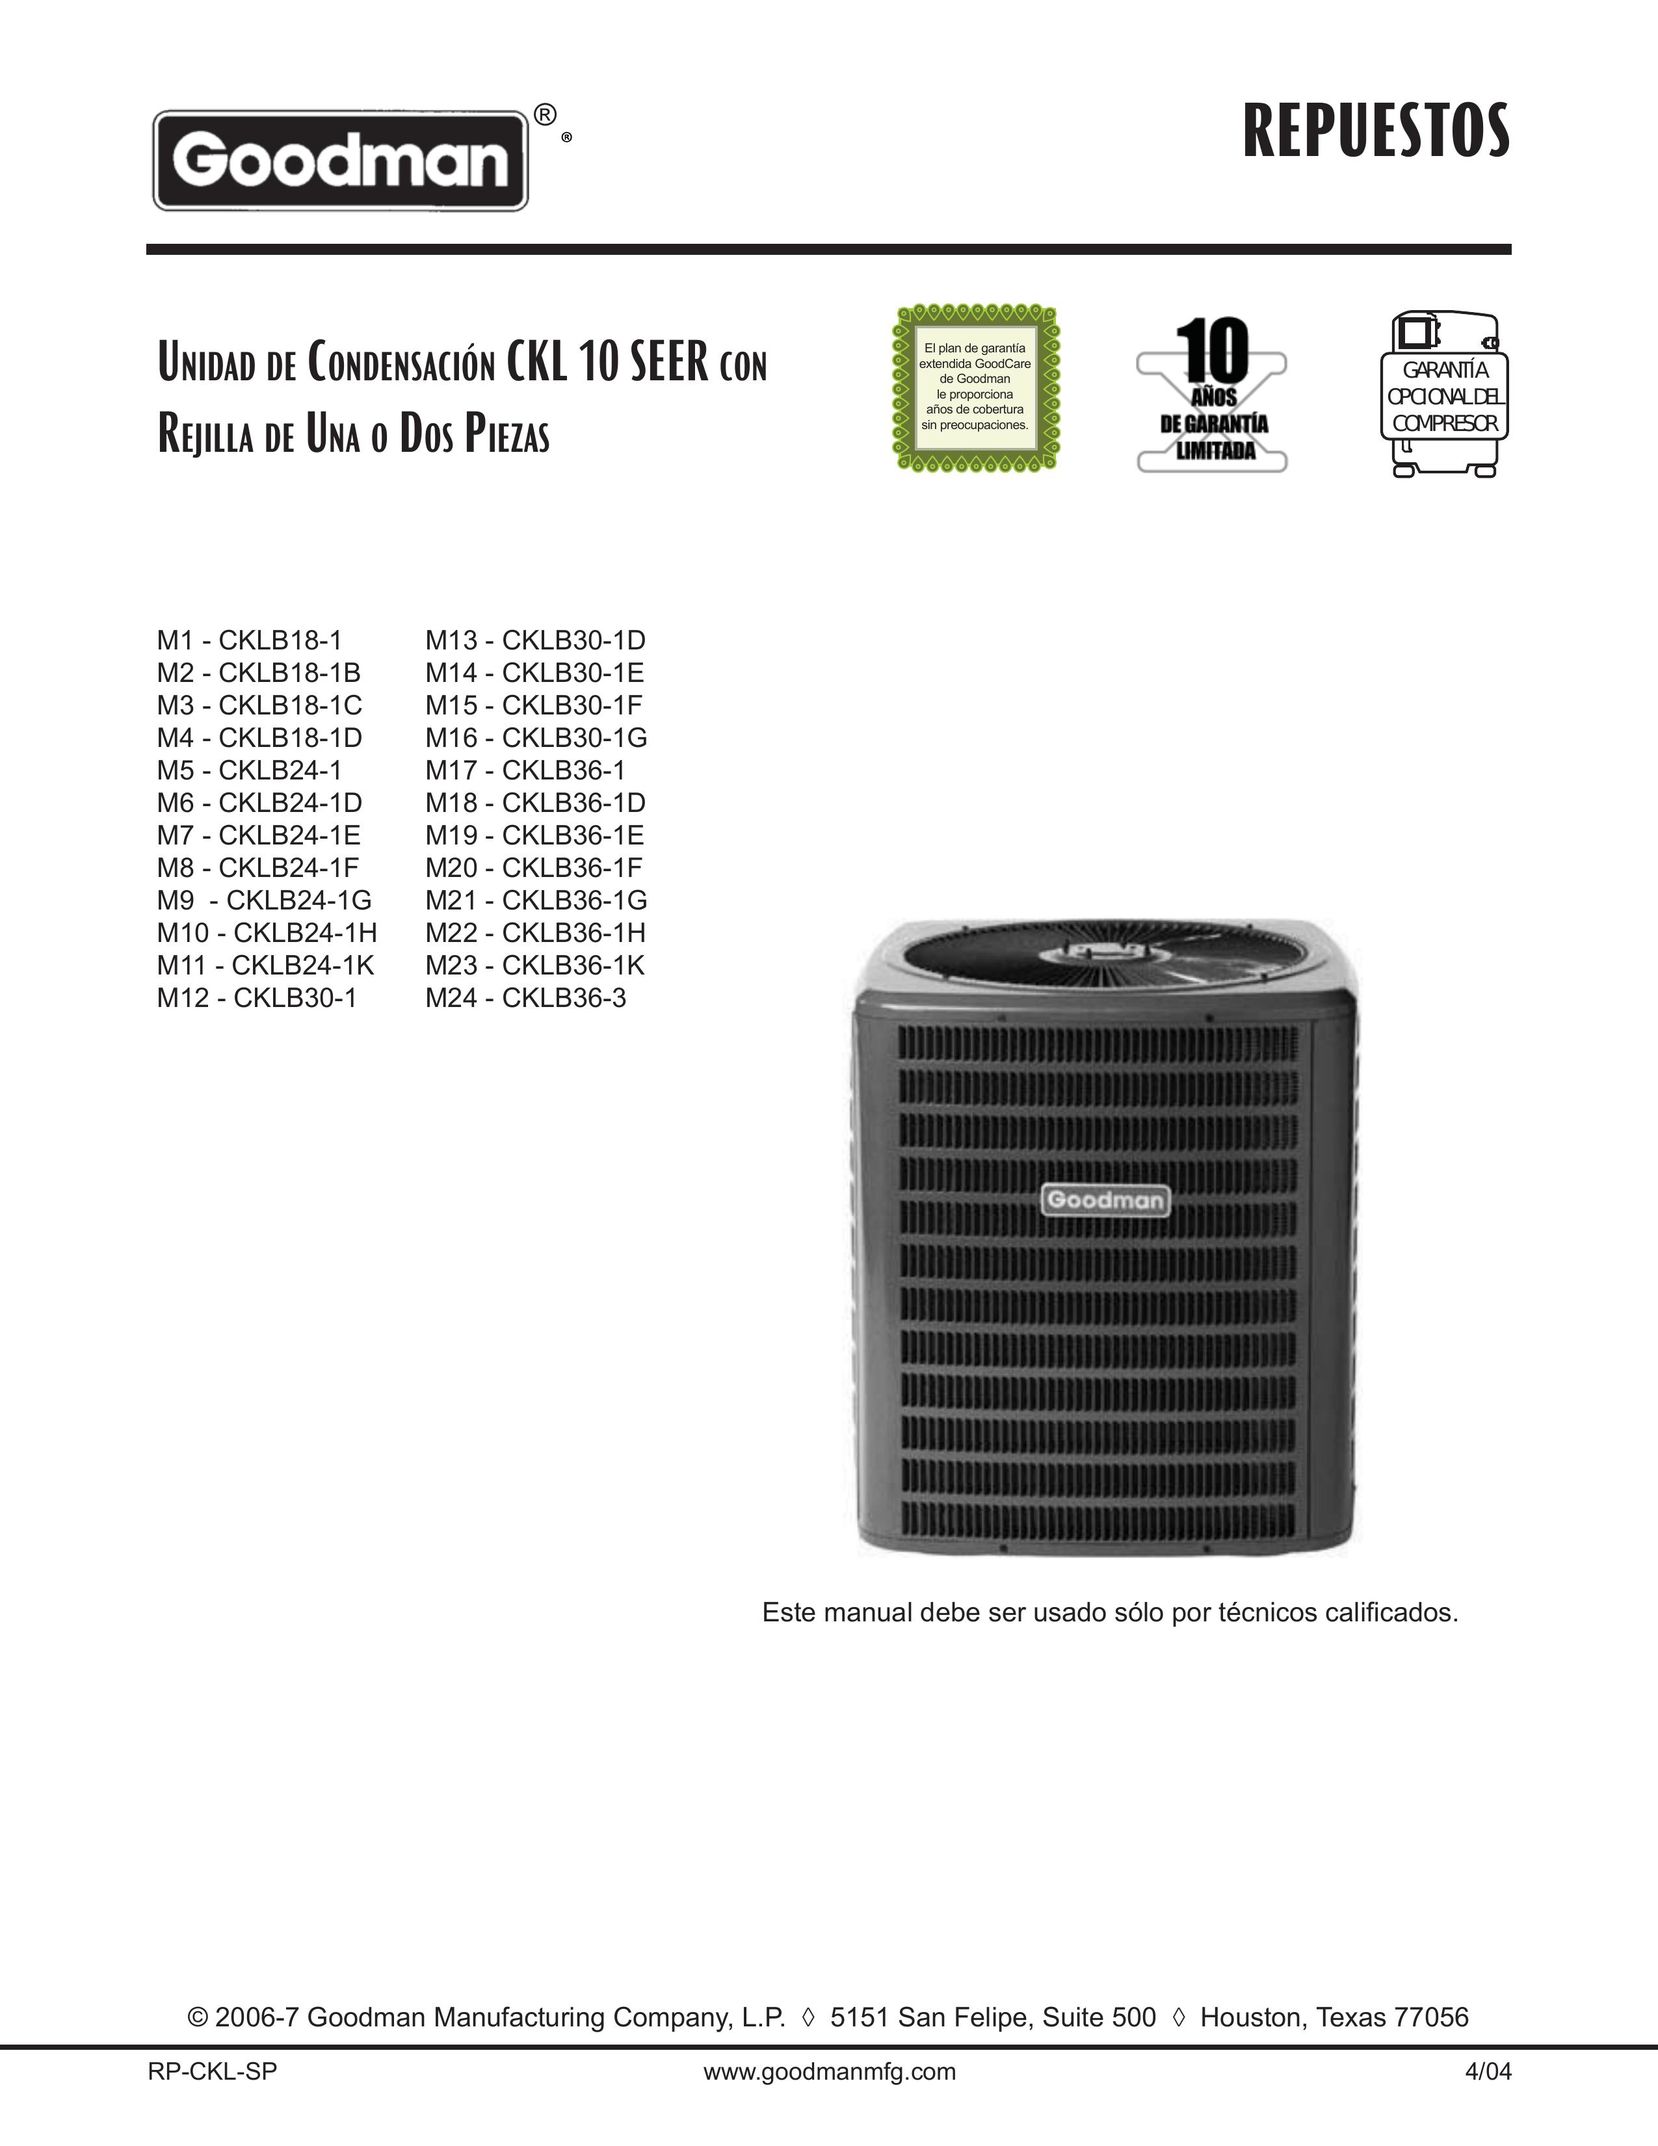 Goodman Mfg CKLB30-1 Air Conditioner User Manual